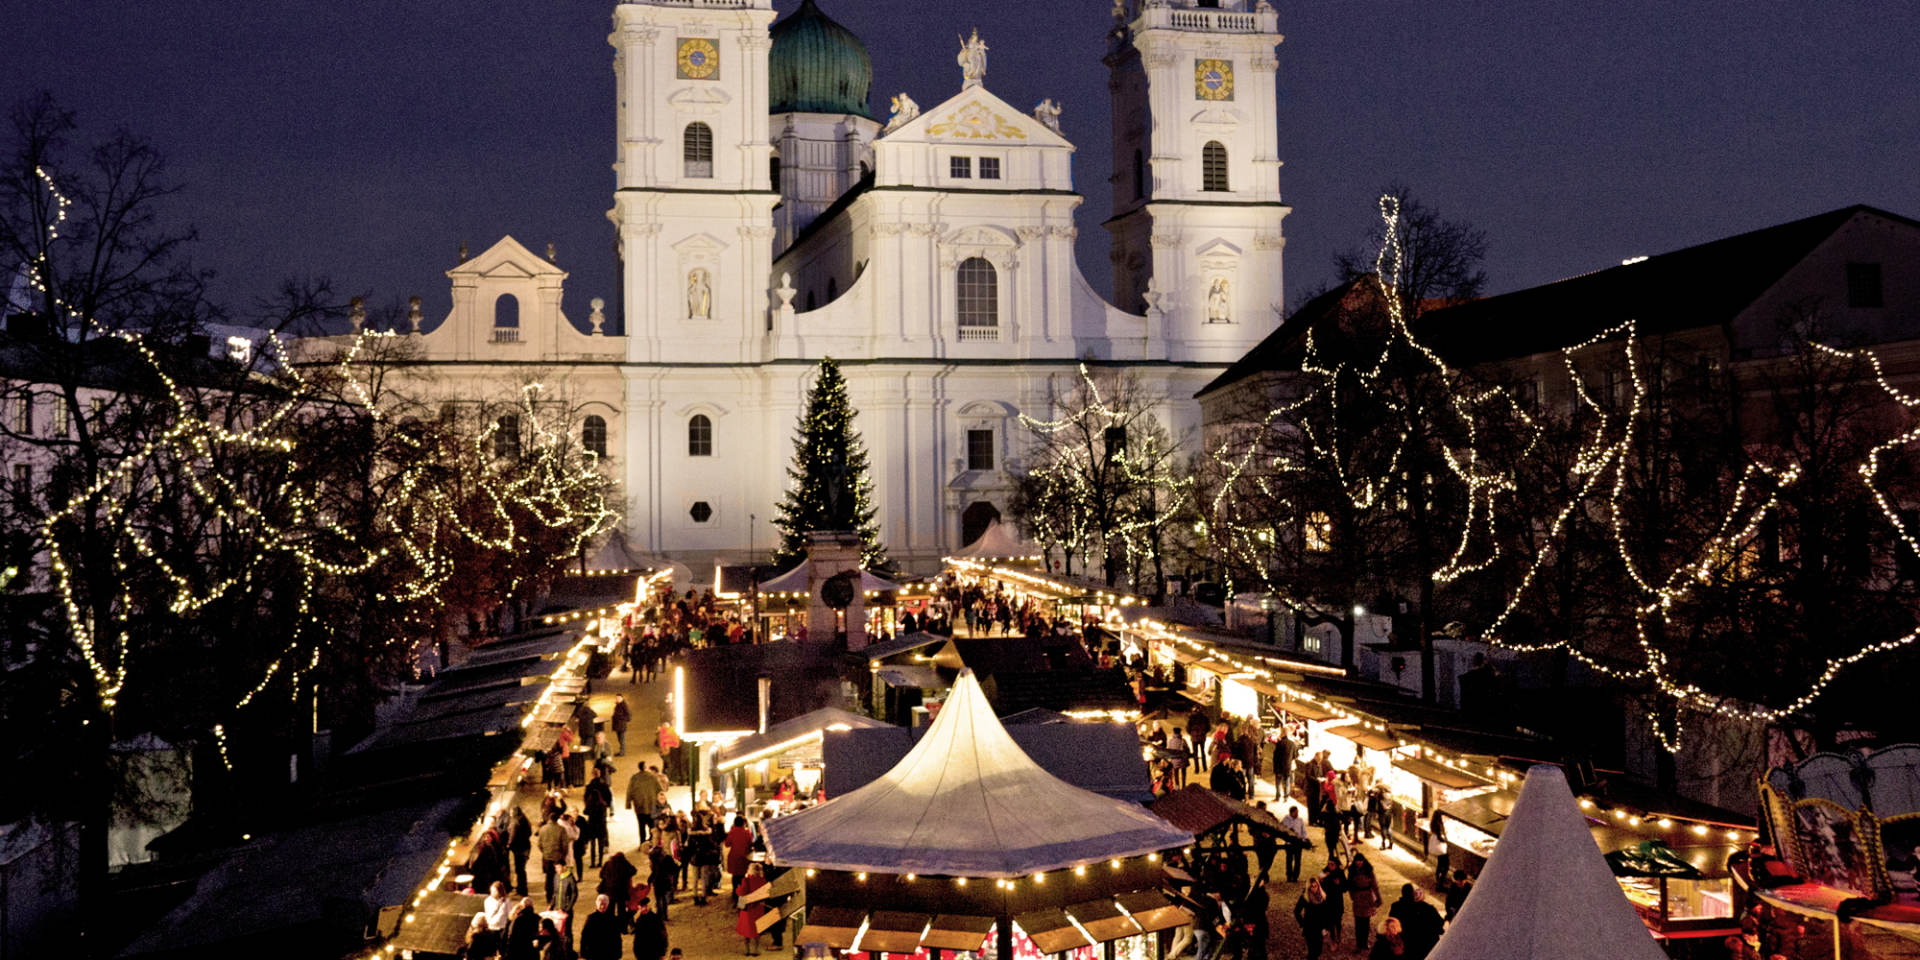 Stadt Passau - christmas market © Stadt Passau